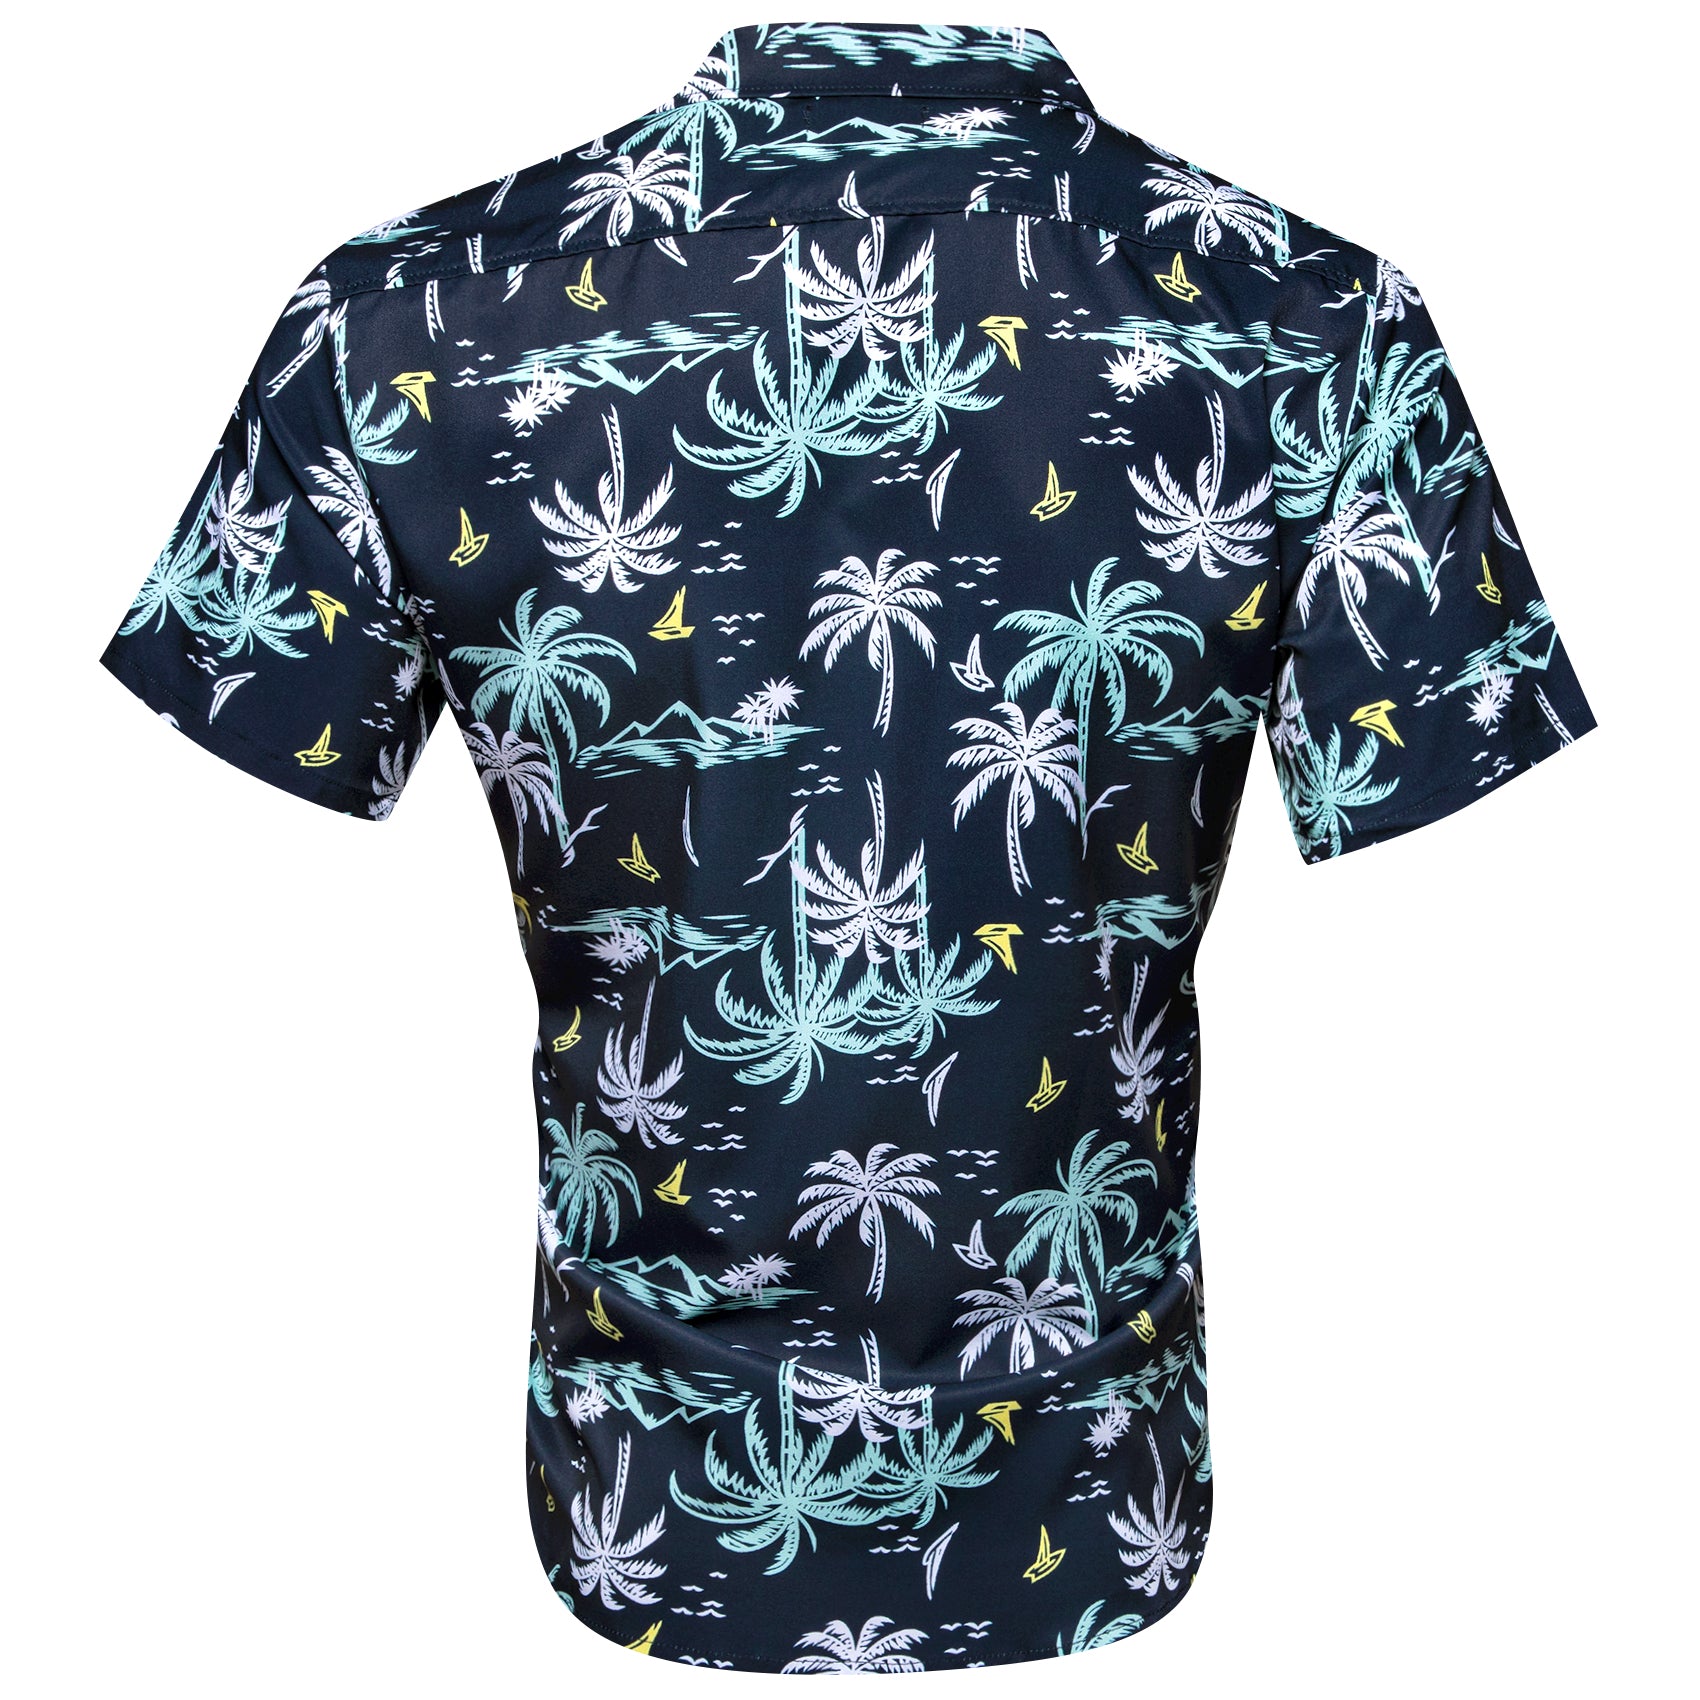 Barry Wang Mens Shirt Men's Oriental Blue White Summer Hawaii Shirt